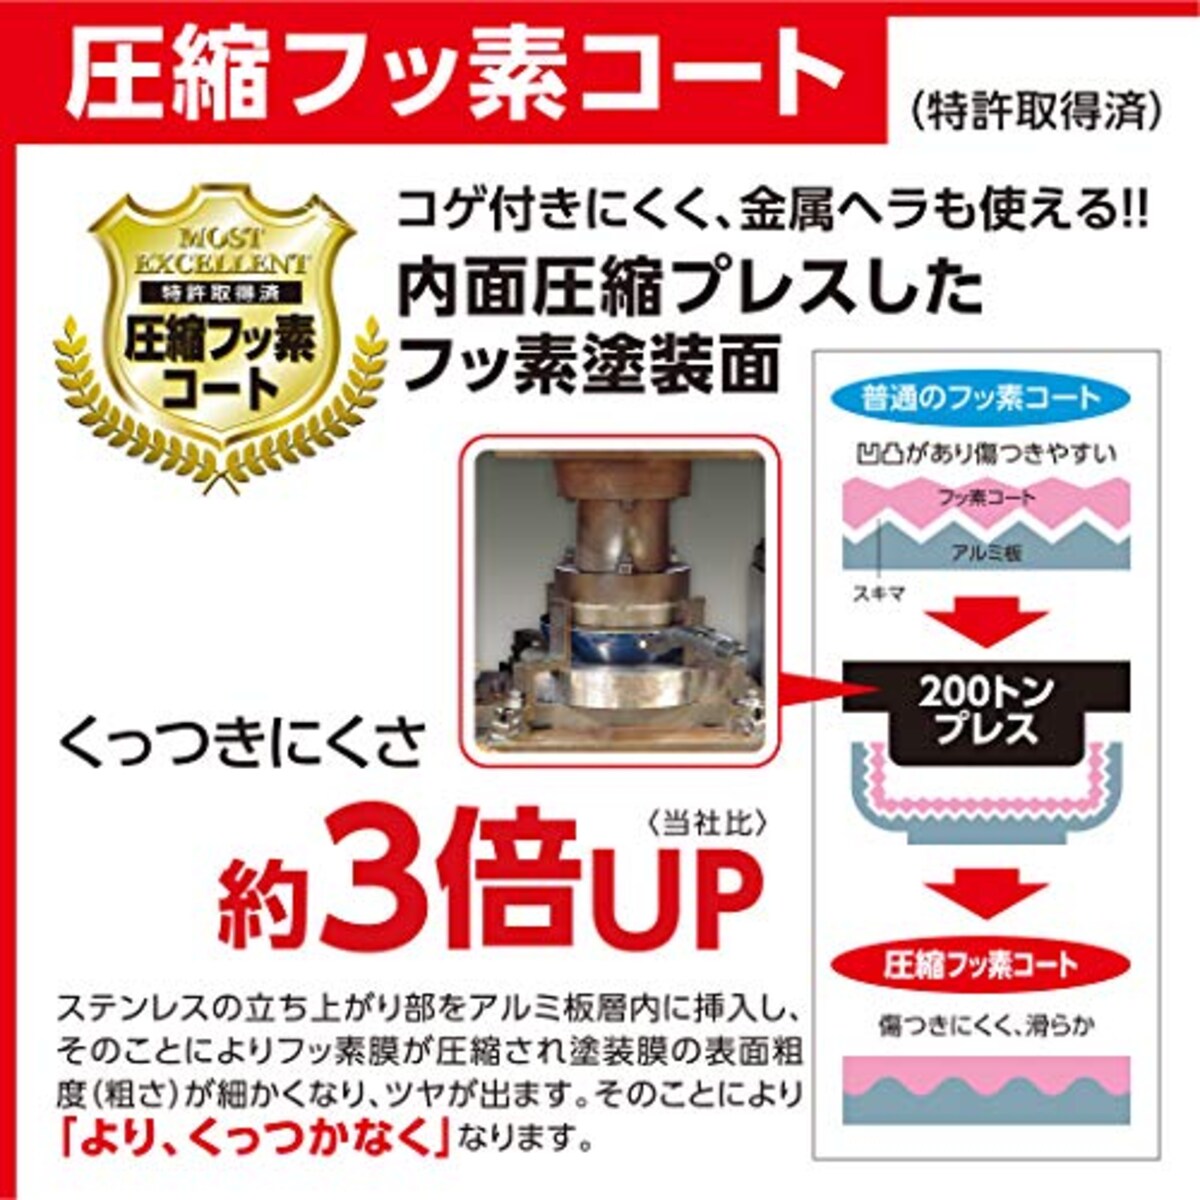  竹原製缶 和楽シリーズ フライパン ブラウン20cm「IH対応」 PM320画像9 